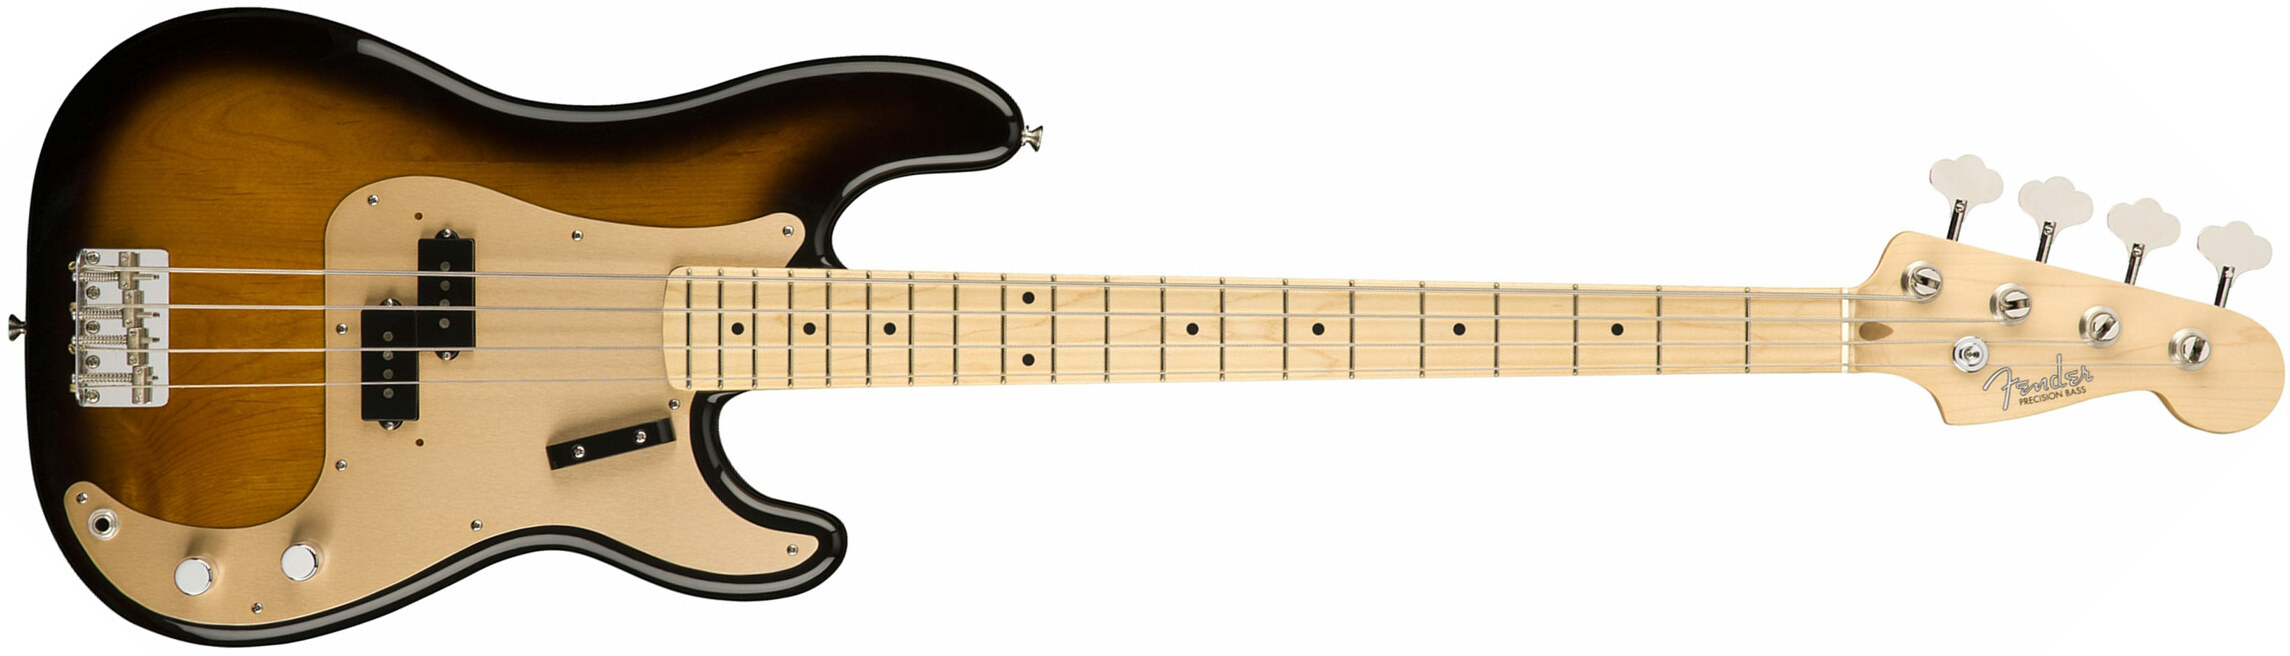 Fender Precision Bass '50s American Original Usa Mn - 2-color Sunburst - Solid body elektrische bas - Main picture